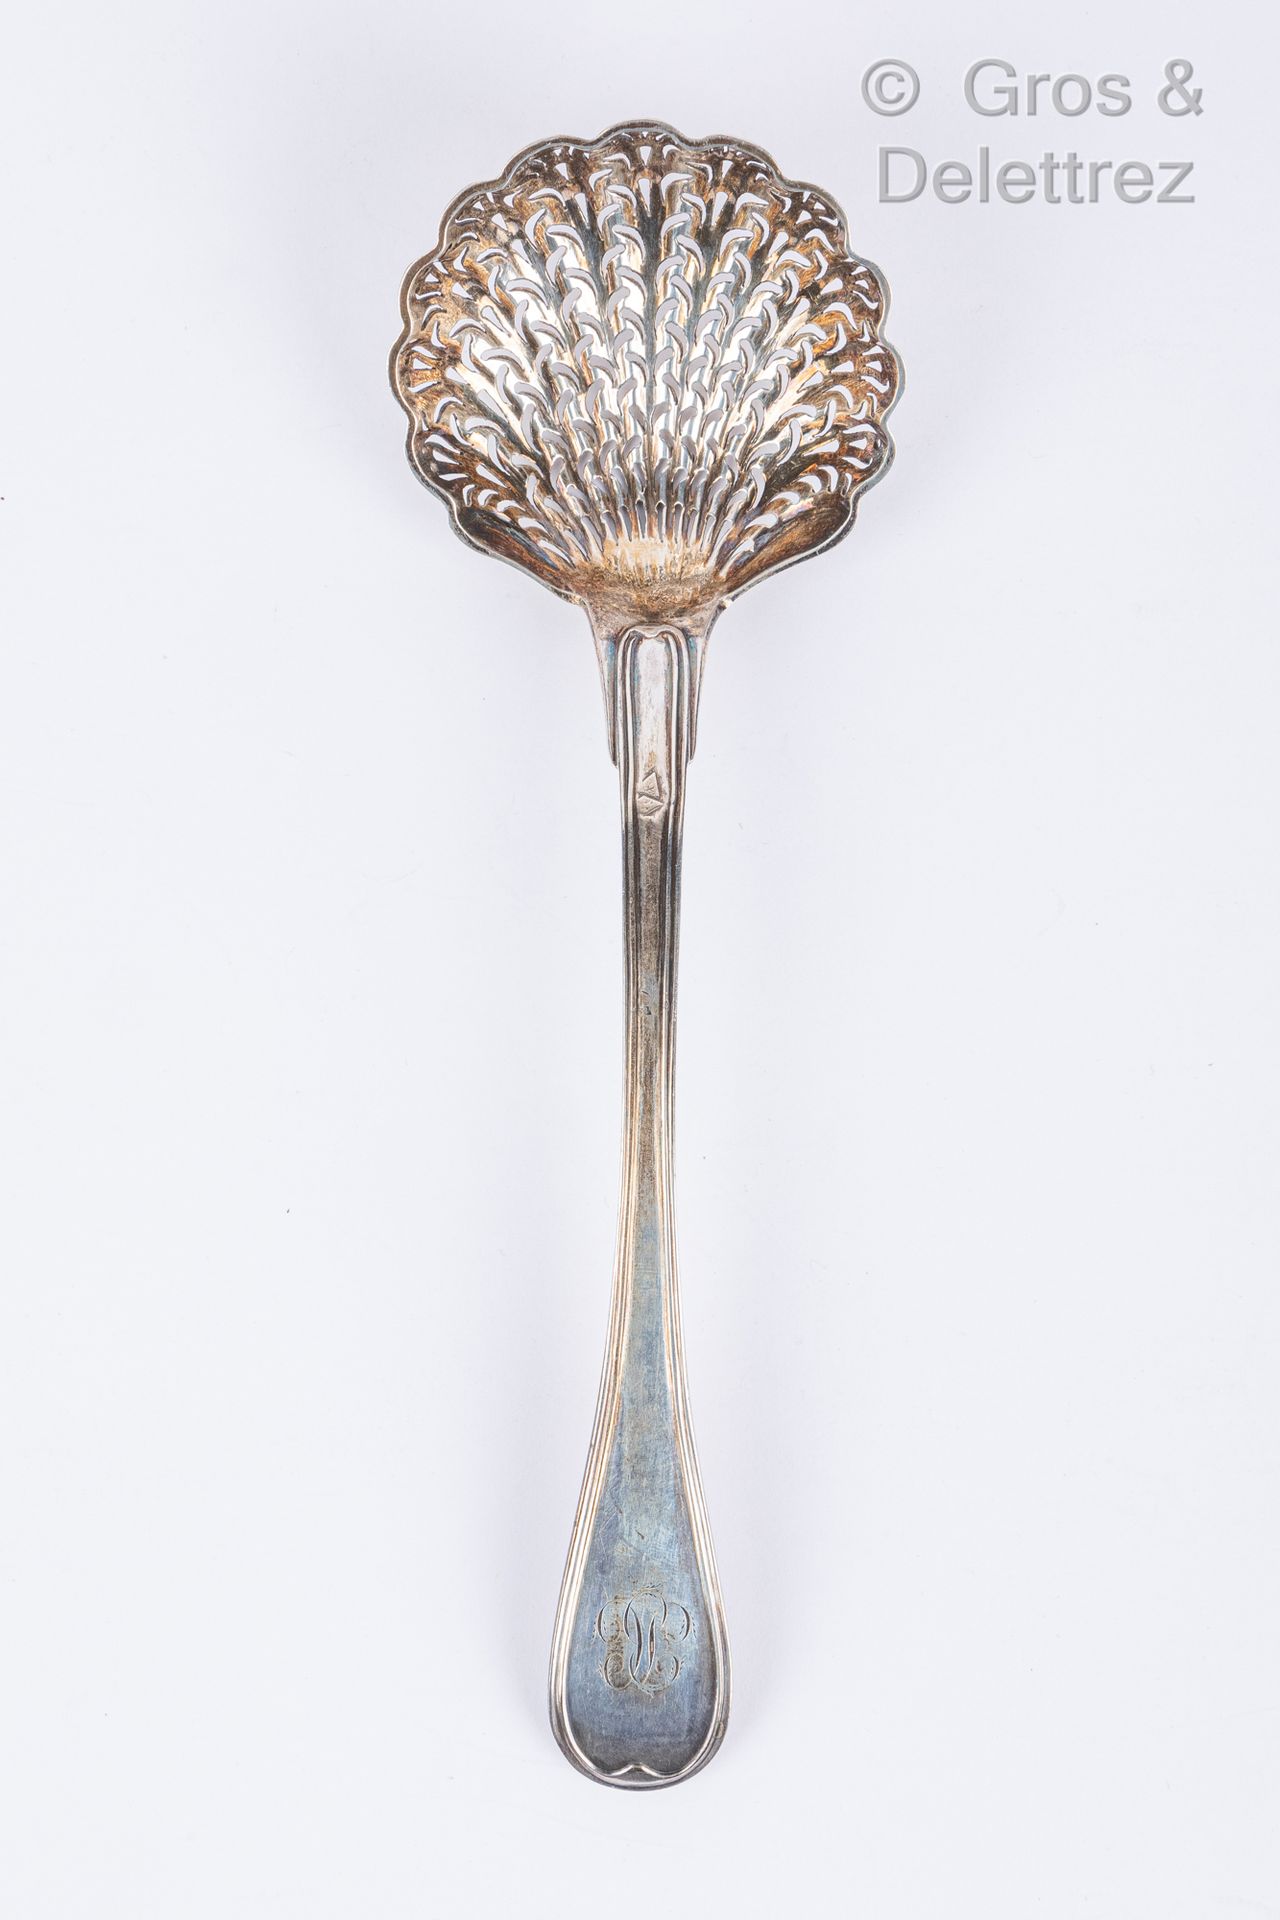 Null Zuckerlöffel aus Silber, birnenförmiges Modell mit Filets, beziffert.

Pari&hellip;